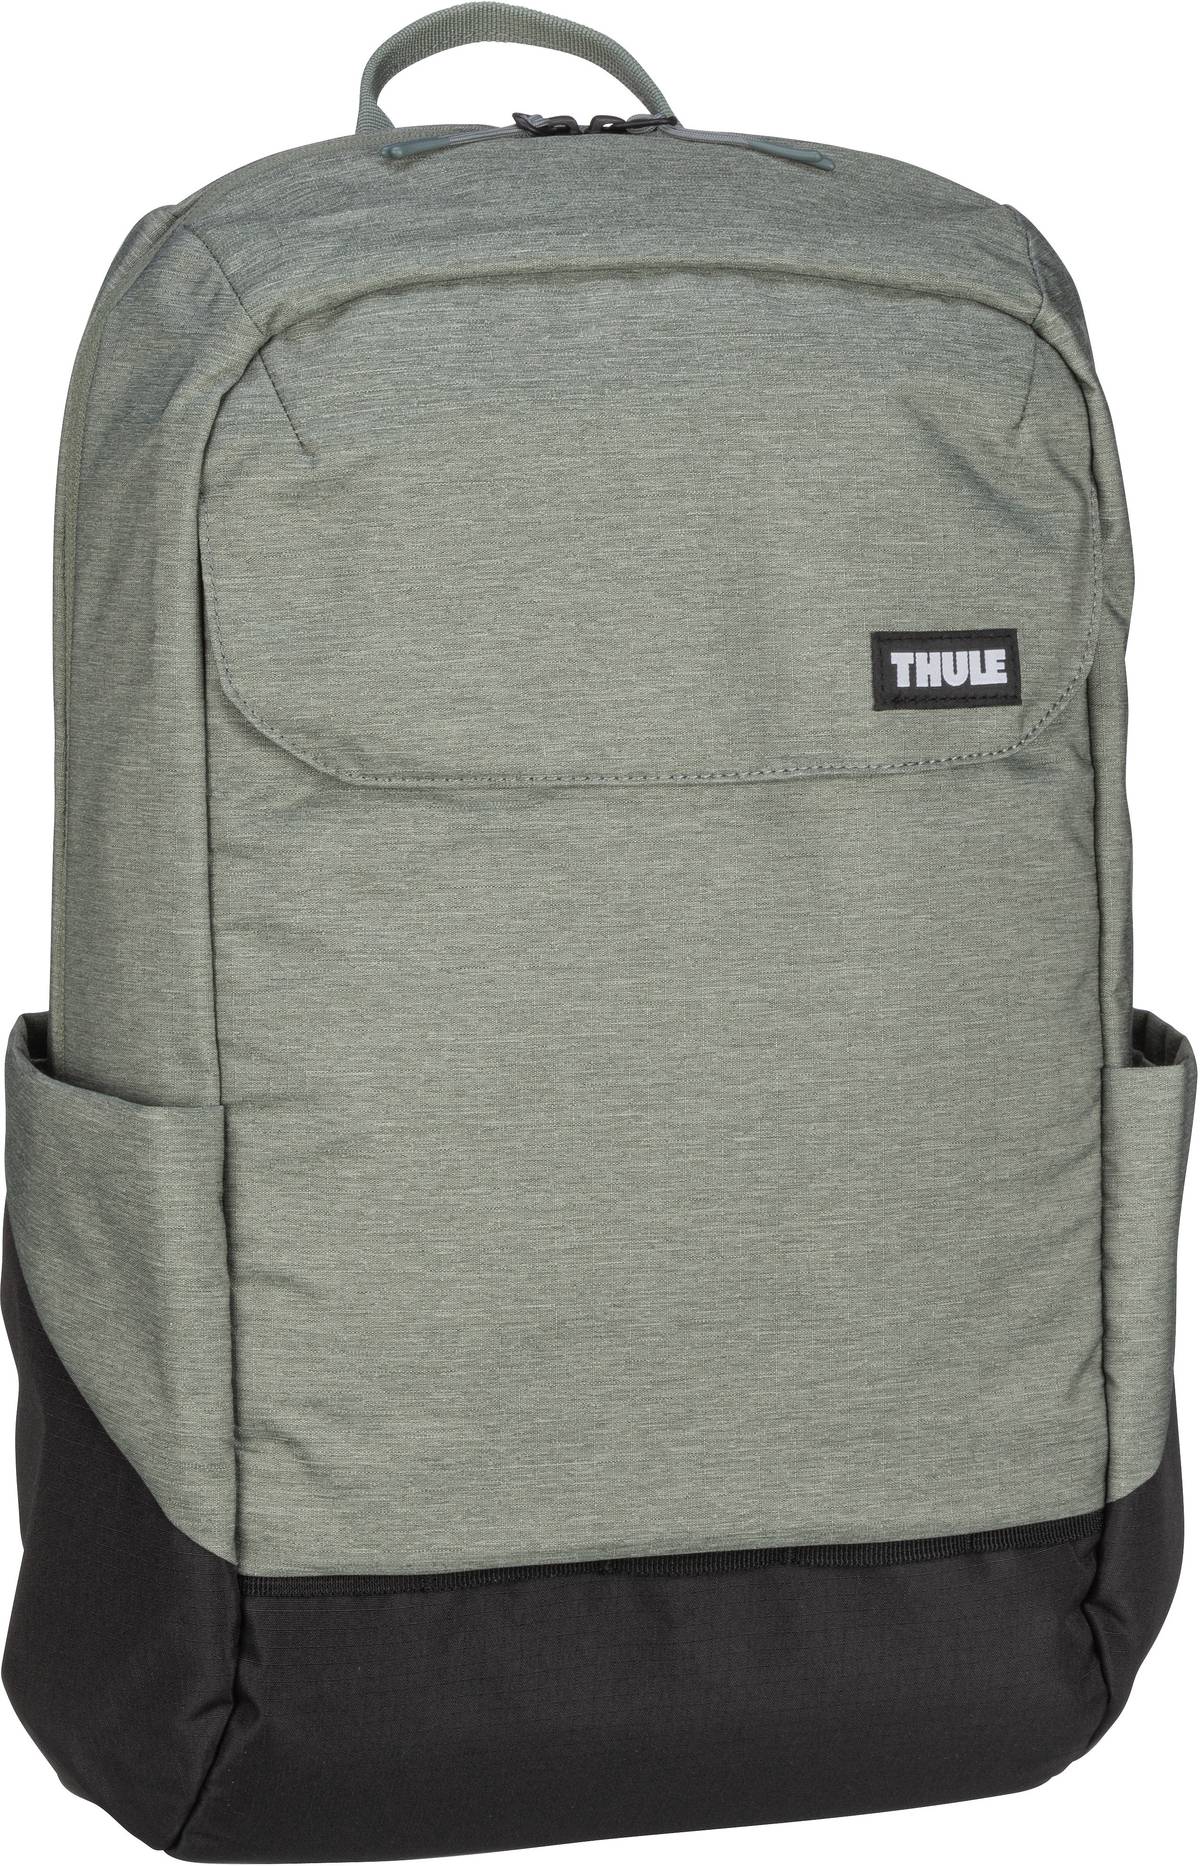 Thule Lithos Backpack 20L - Agave/Black